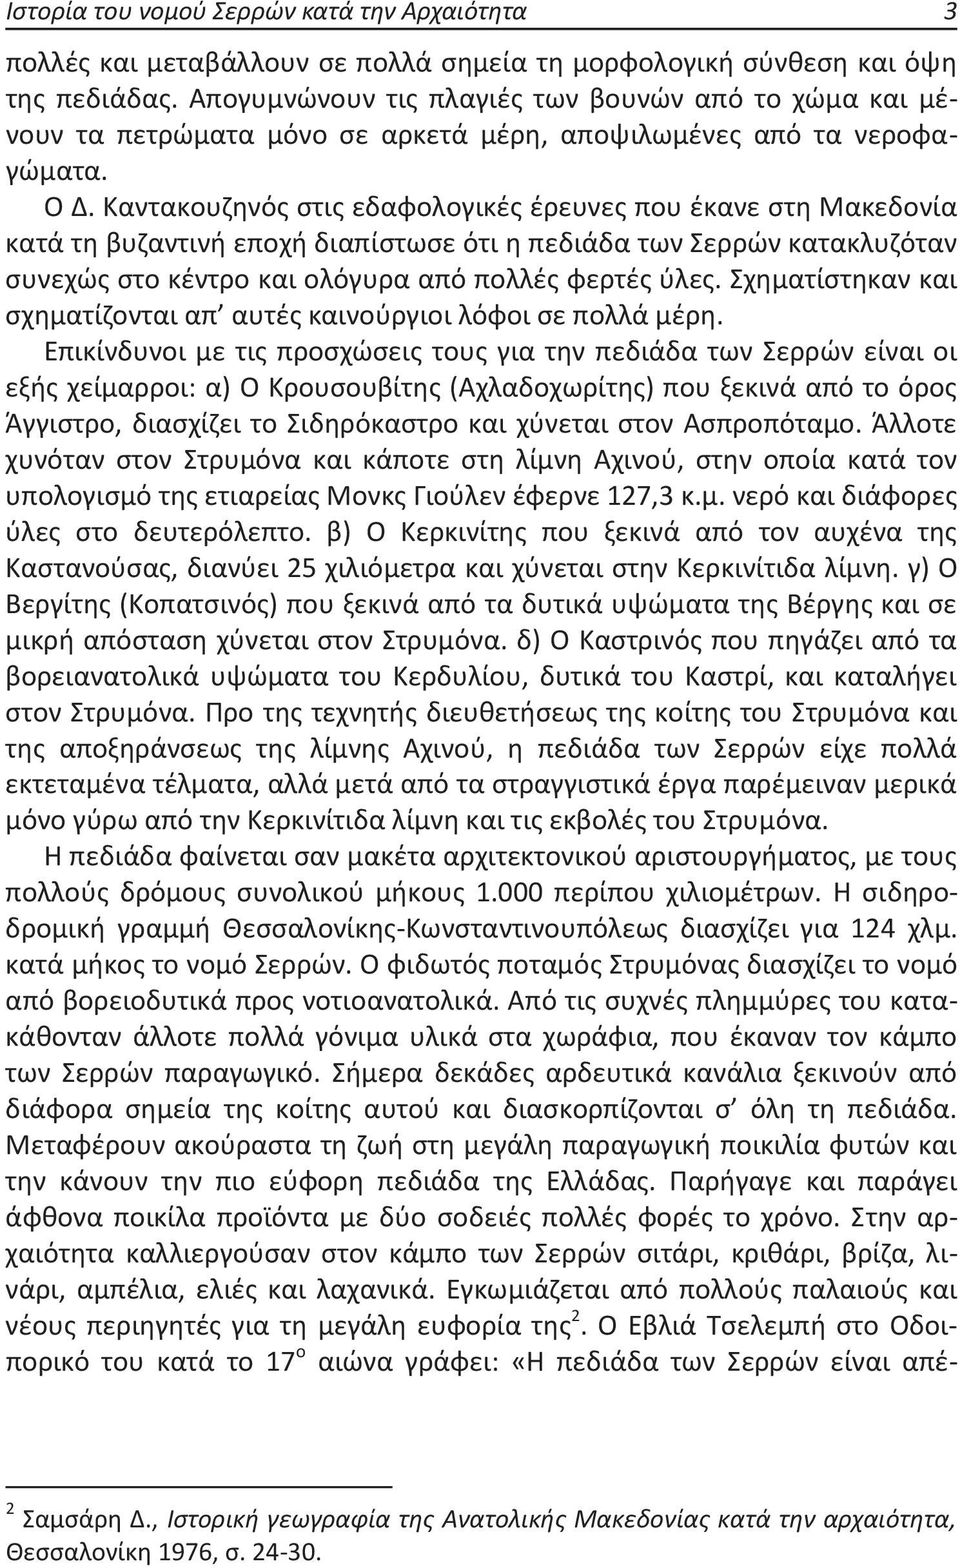 Καντακουζηνός στις εδαφολογικές έρευνες που έκανε στη Μακεδονία κατά τη βυζαντινή εποχή διαπίστωσε ότι η πεδιάδα των Σερρών κατακλυζόταν συνεχώς στο κέντρο και ολόγυρα από πολλές φερτές ύλες.